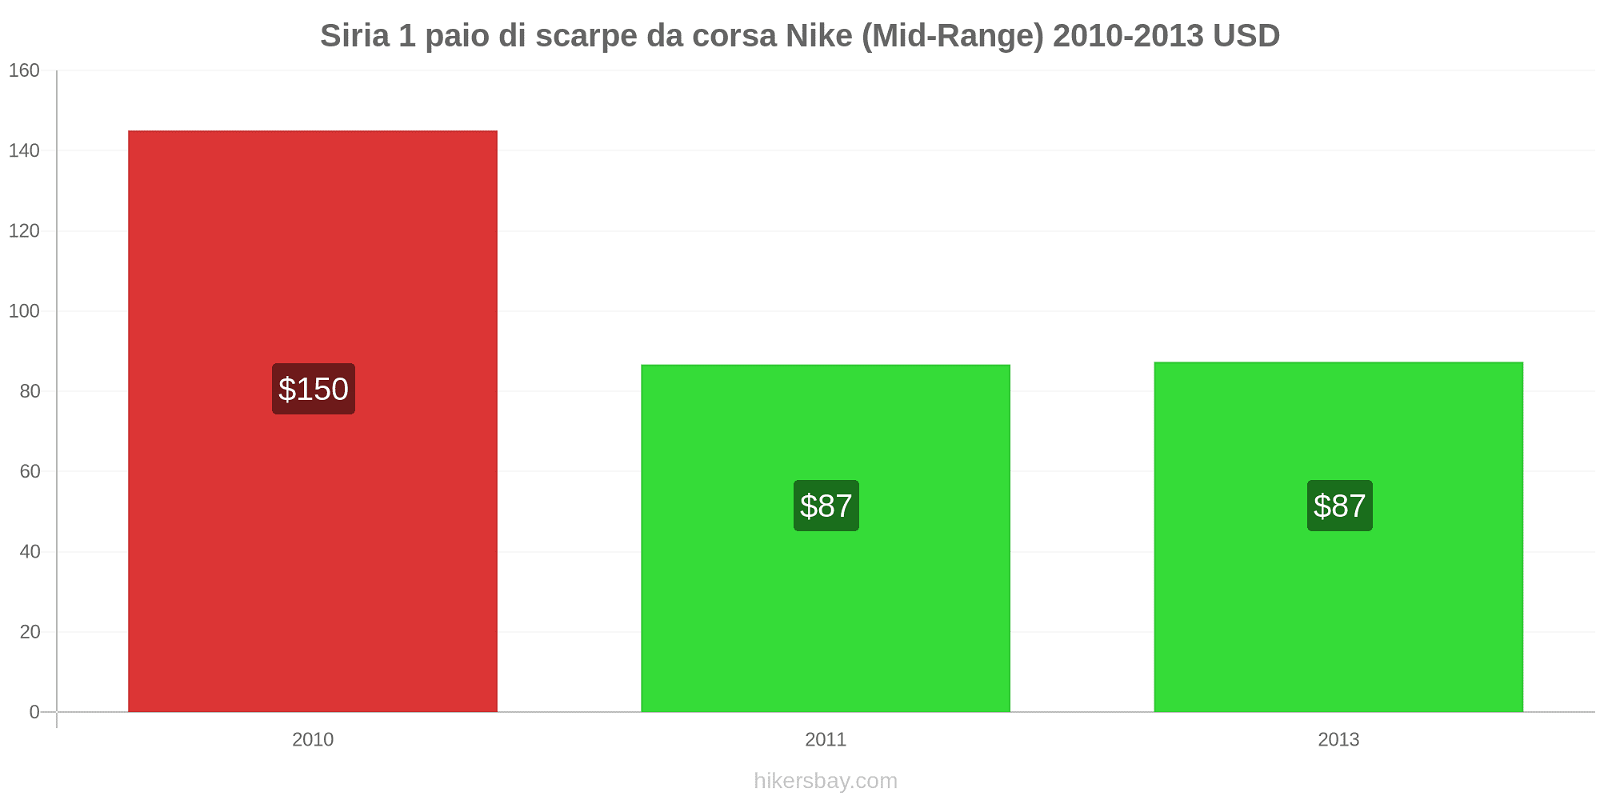 Siria variazioni di prezzo 1 paio di scarpe da corsa Nike (simile) hikersbay.com